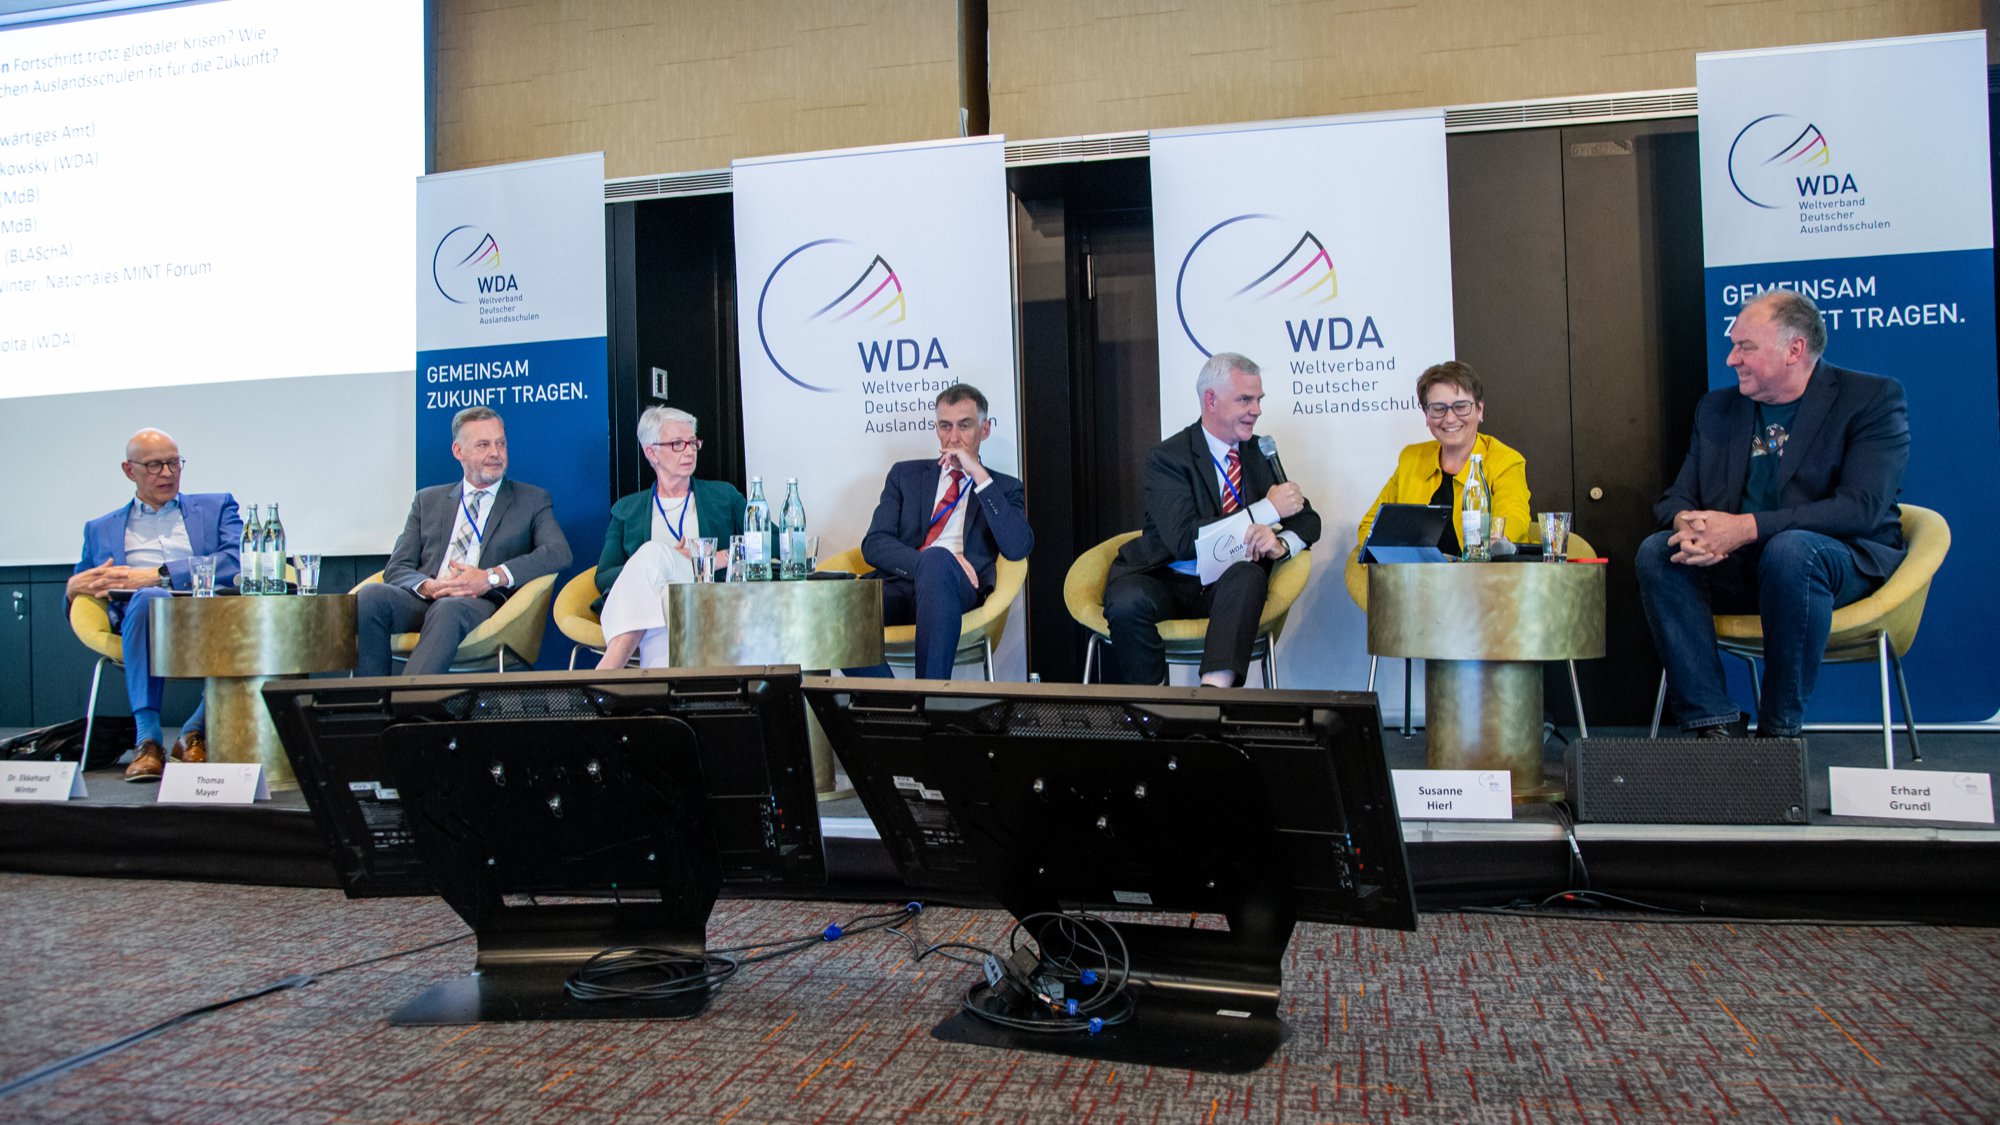 Fit für die Zukunft: WDA-Symposium unterstreicht, was die Deutschen Auslandsschulen brauchen cover